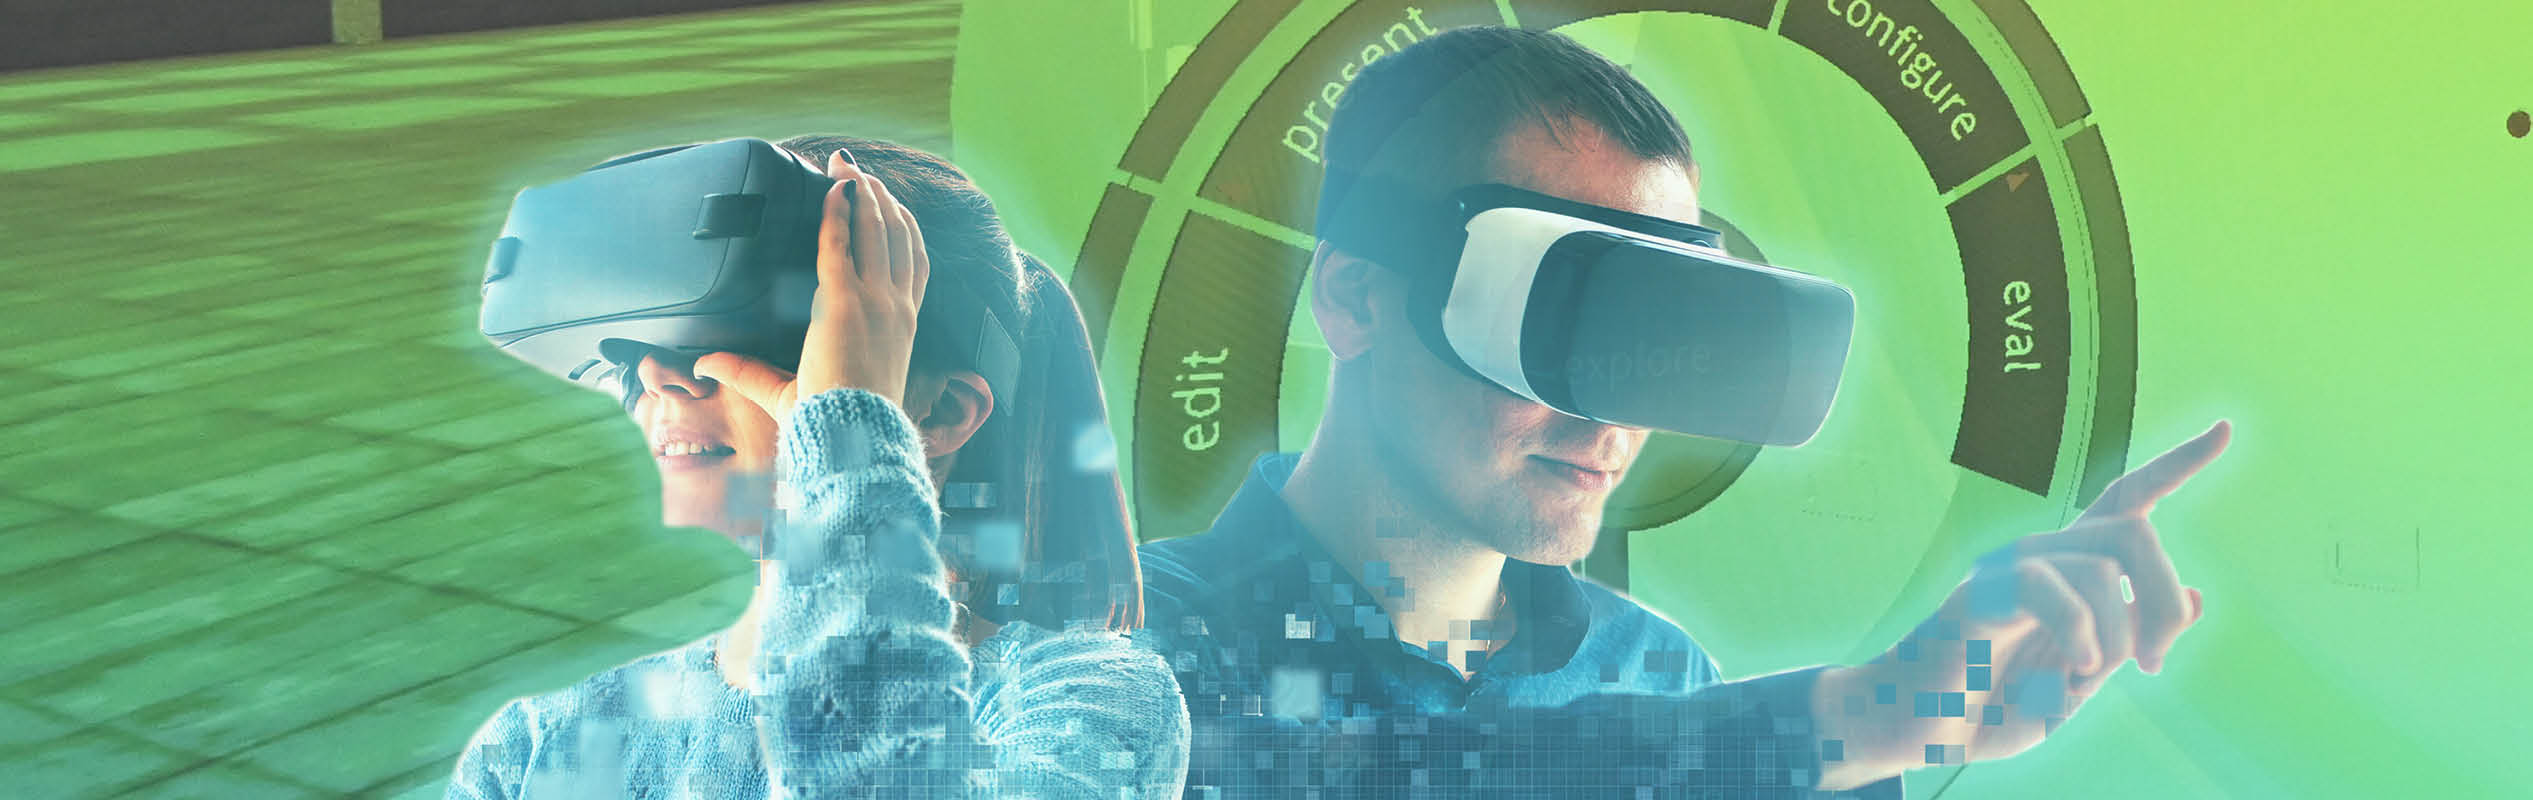 Systemtechnik am Beispiel Mann und Frau mit VR-Brille